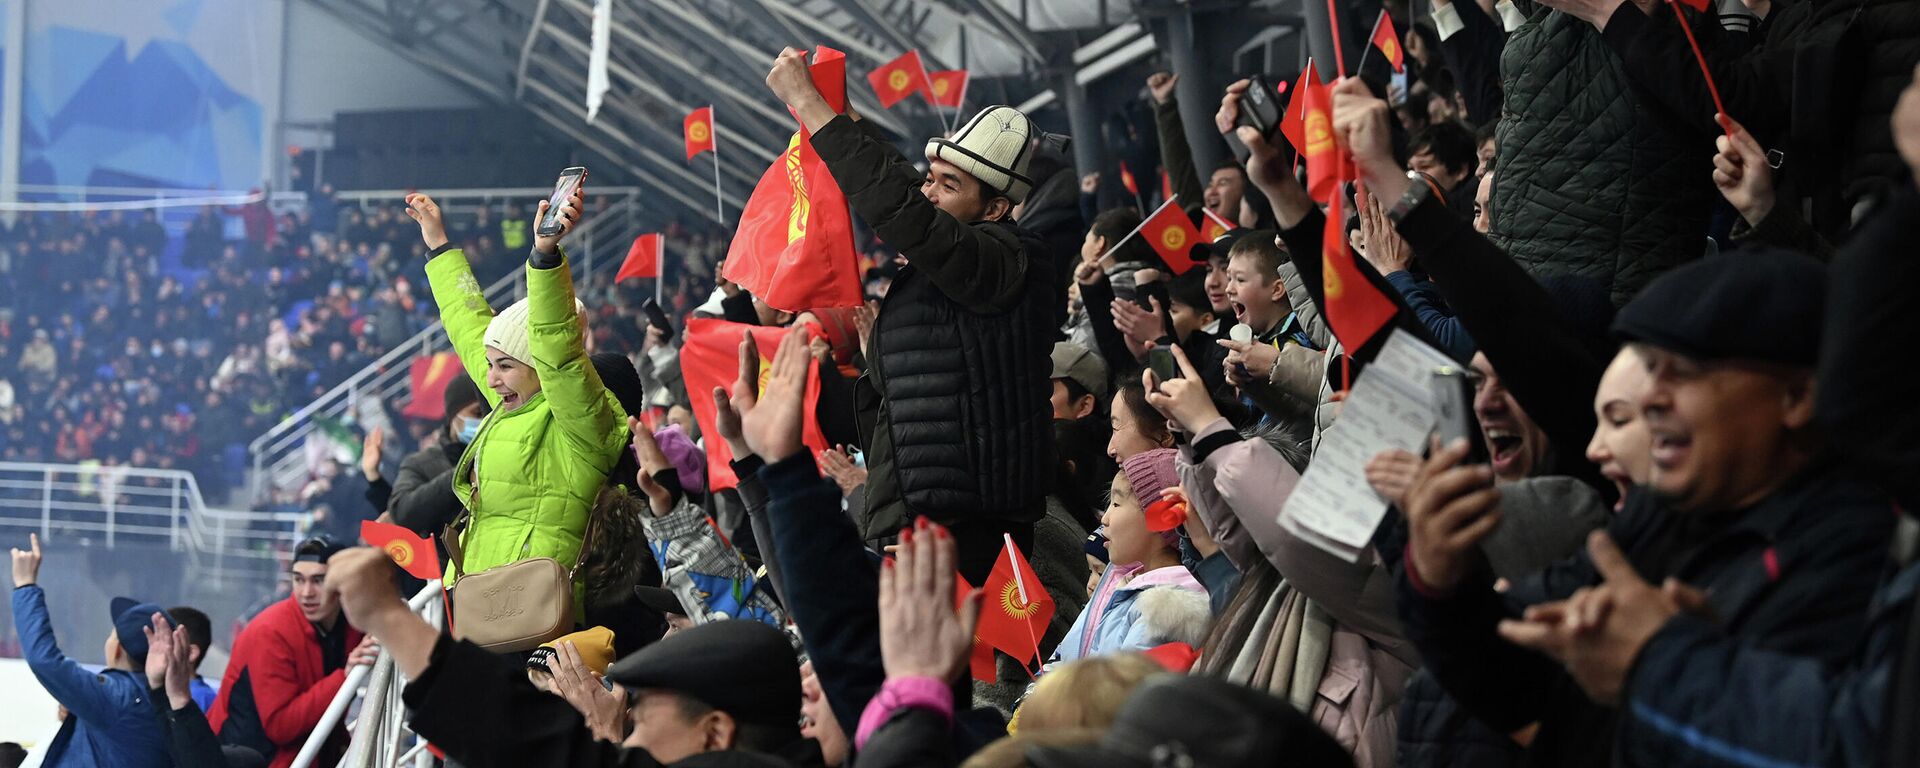 Бишкекте өтүп жаткан IV дивизиондогу хоккей боюнча дүйнө чемпионаты - Sputnik Кыргызстан, 1920, 03.03.2022